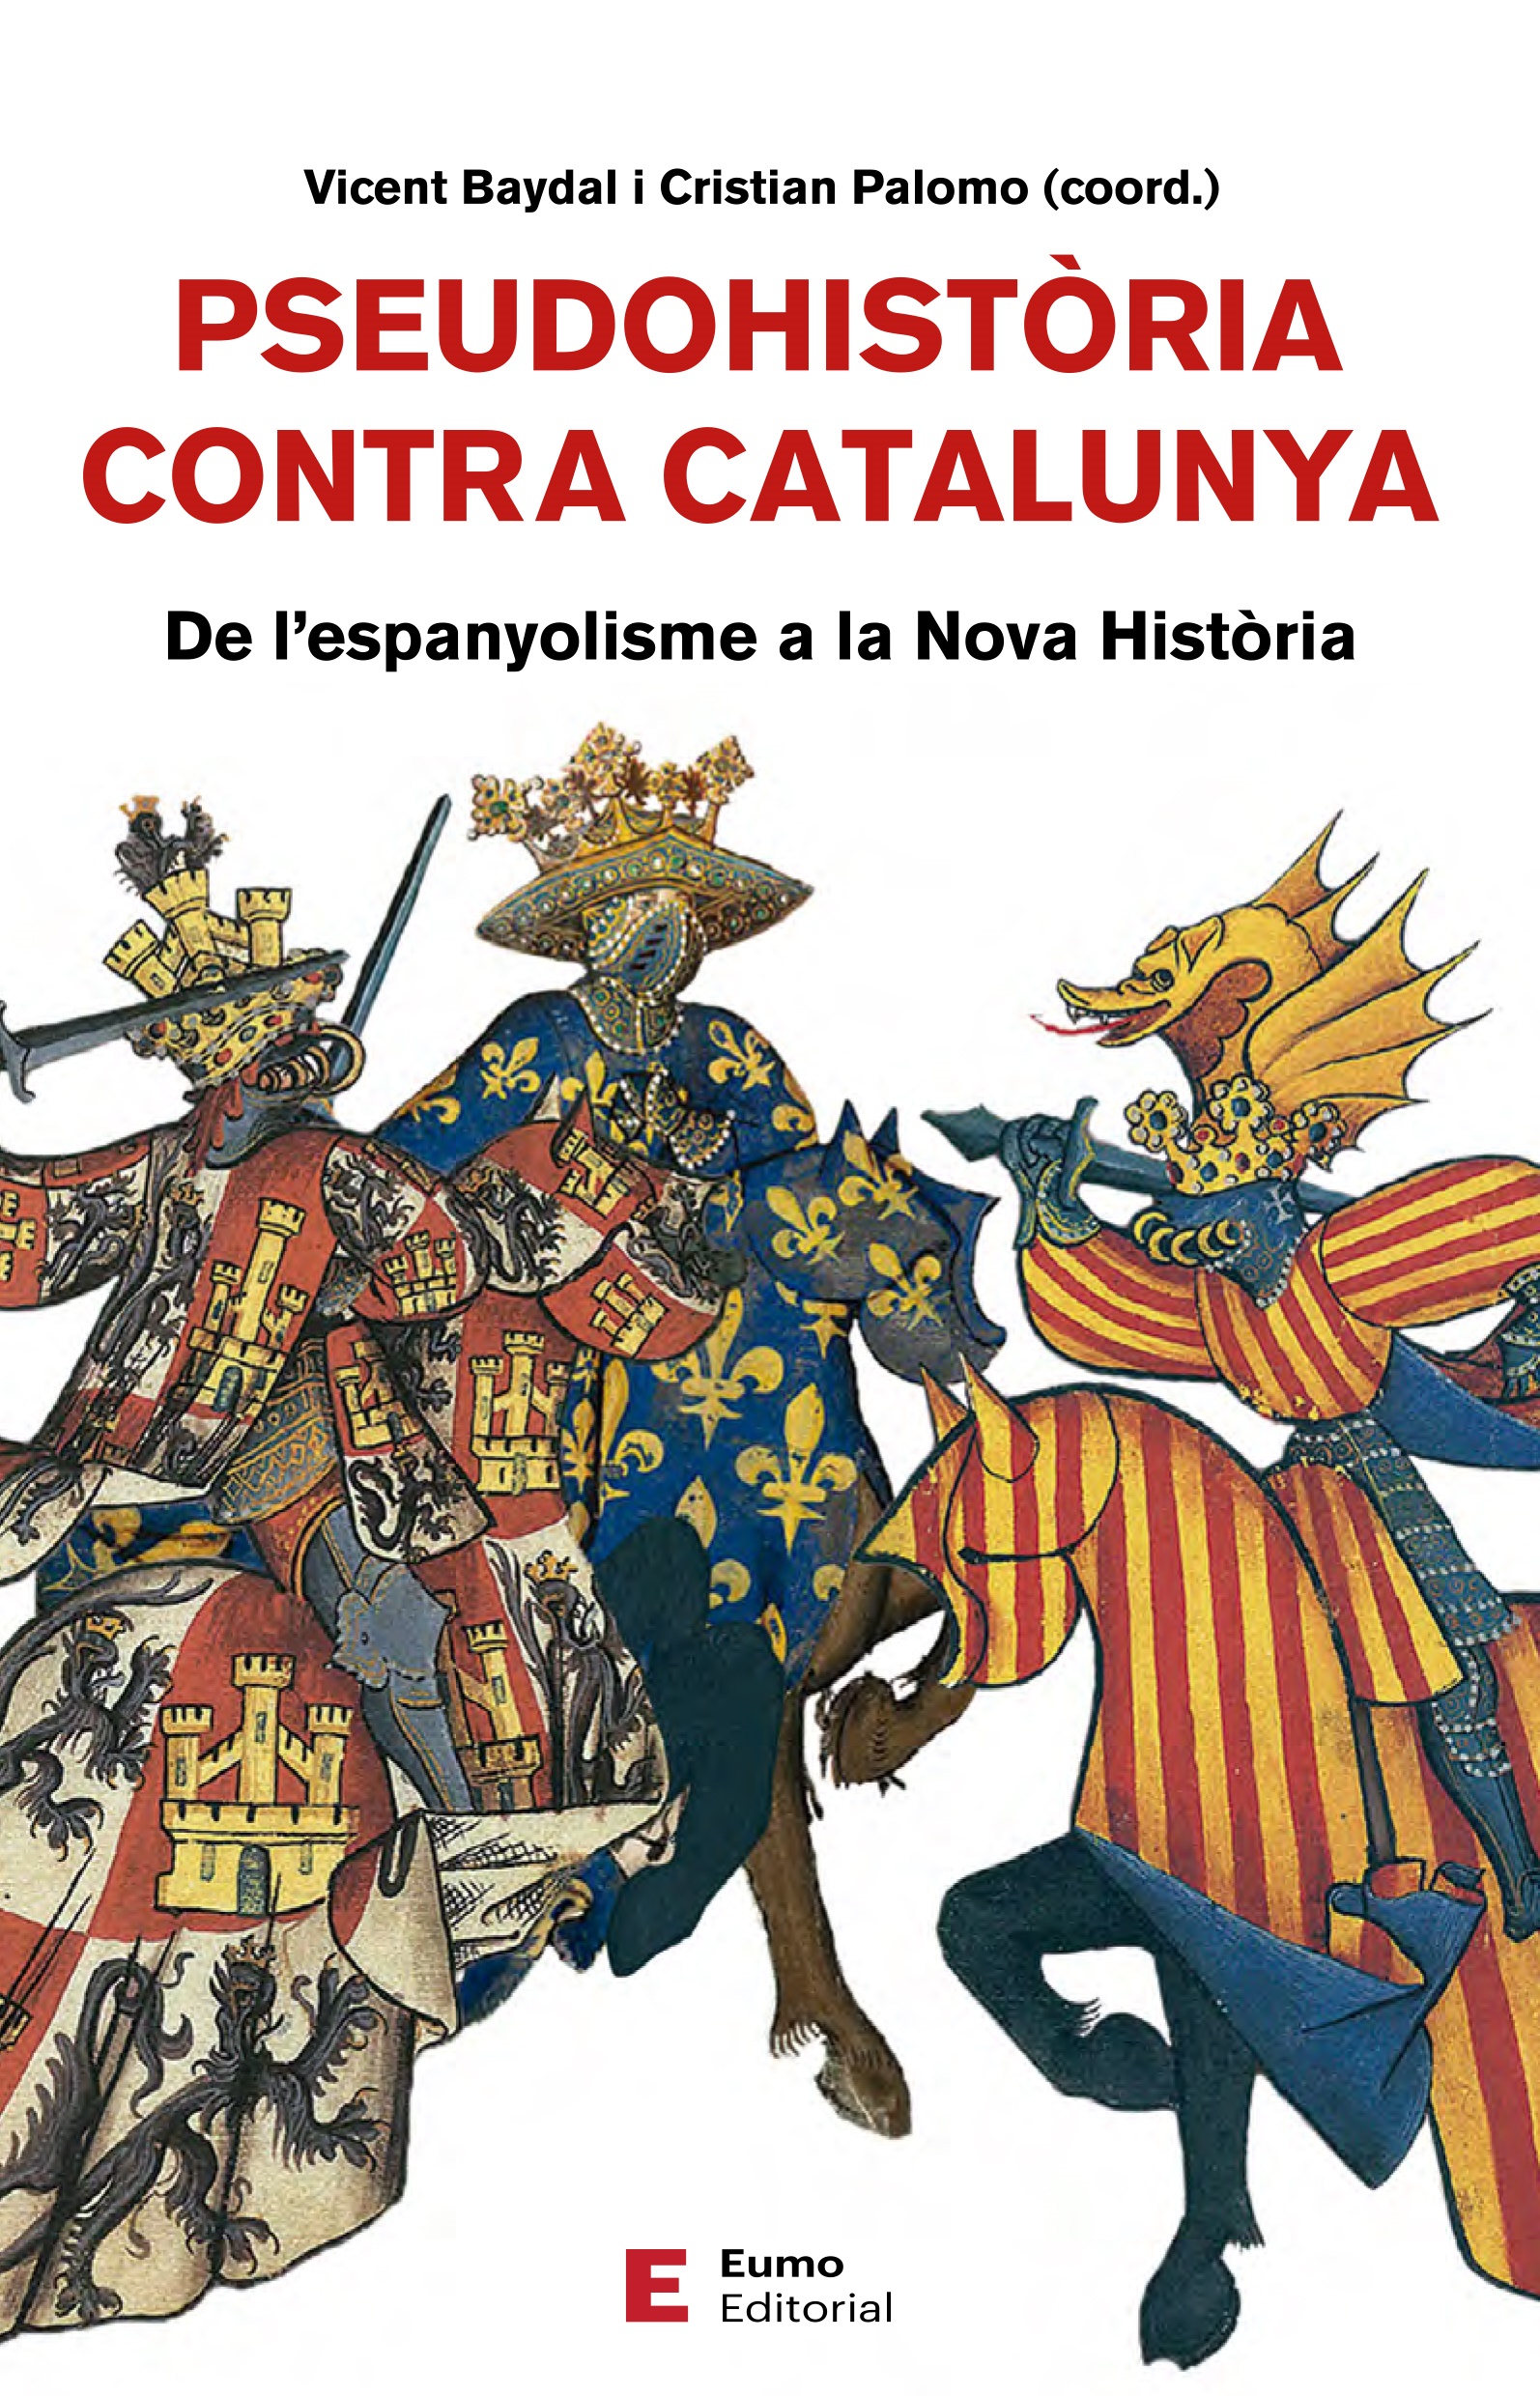 Presentació del llibre: “Pseudohistòria contra Catalunya” l’11 de març